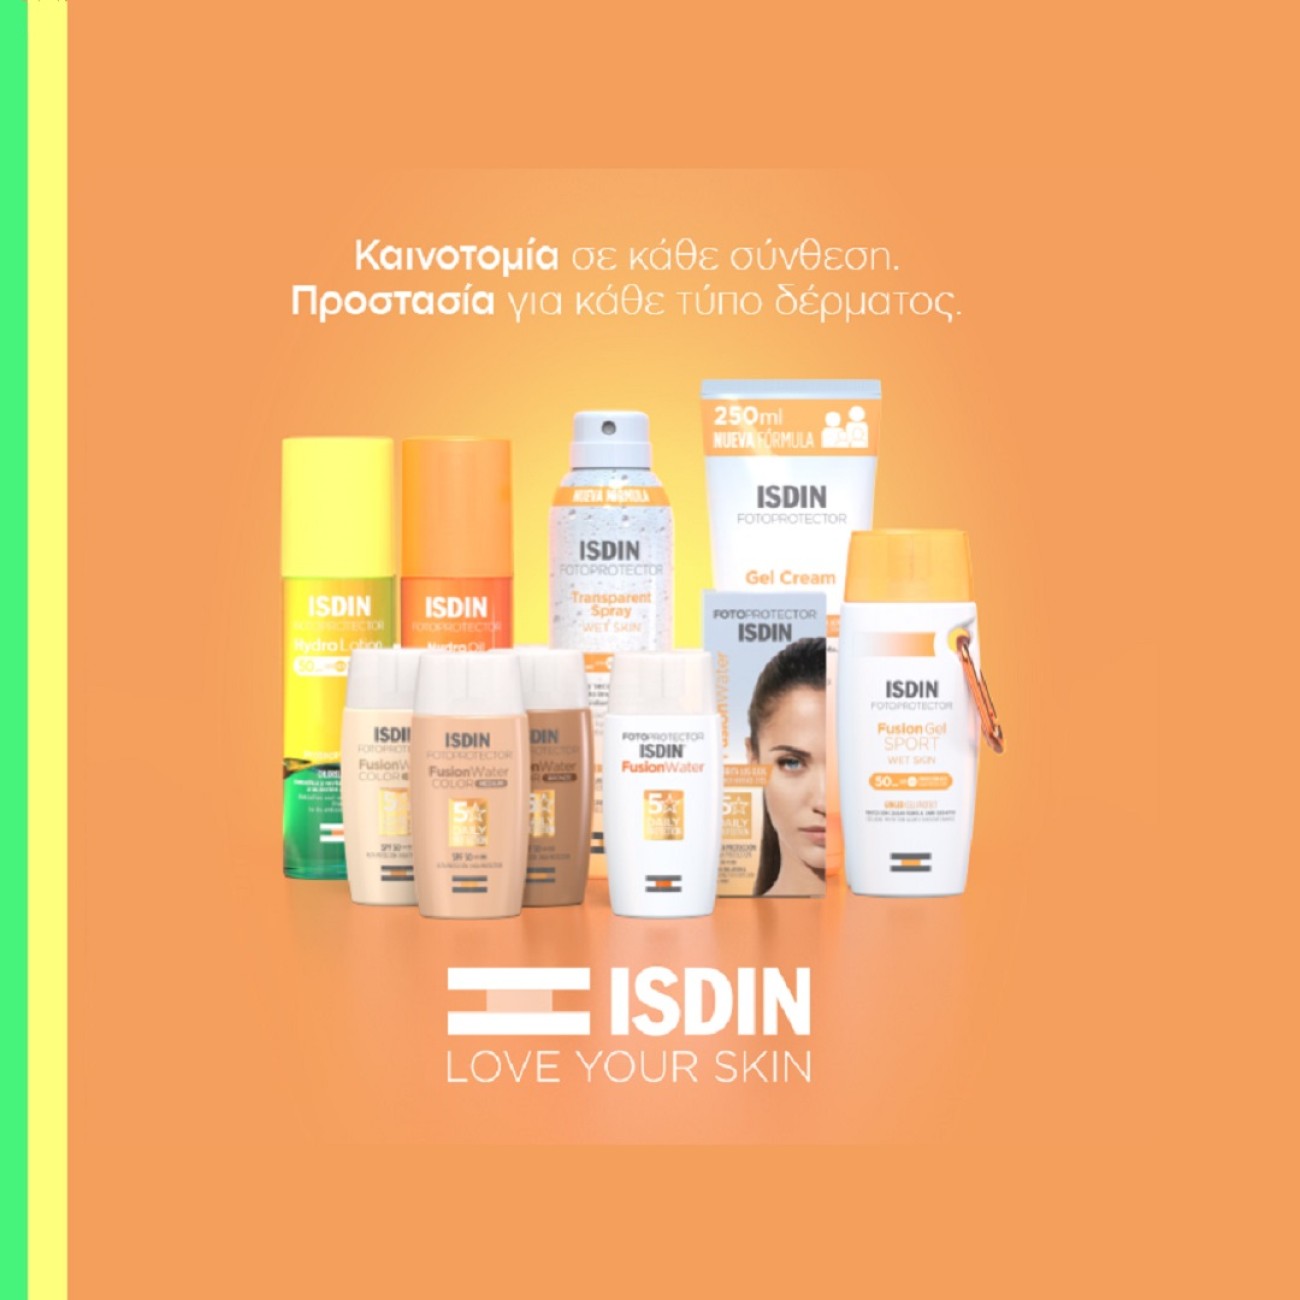 Προστασία για κάθε τύπο δέρματος με αντηλιακά ISDIN!